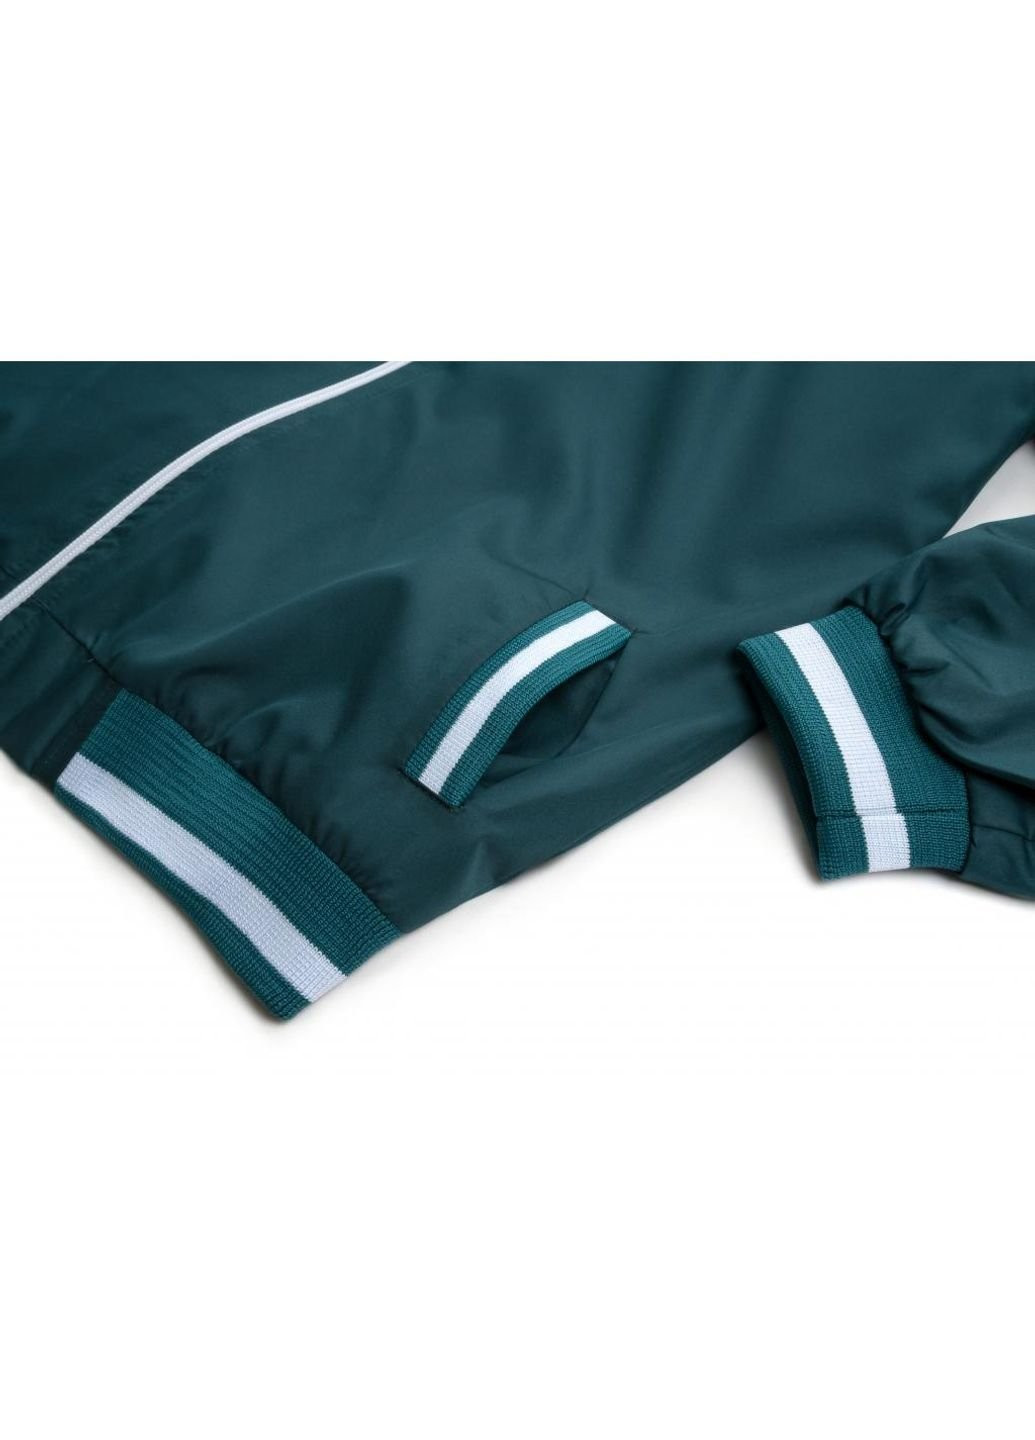 Белая демисезонная куртка ветровка с манжетами (7910-152b-green) Haknur